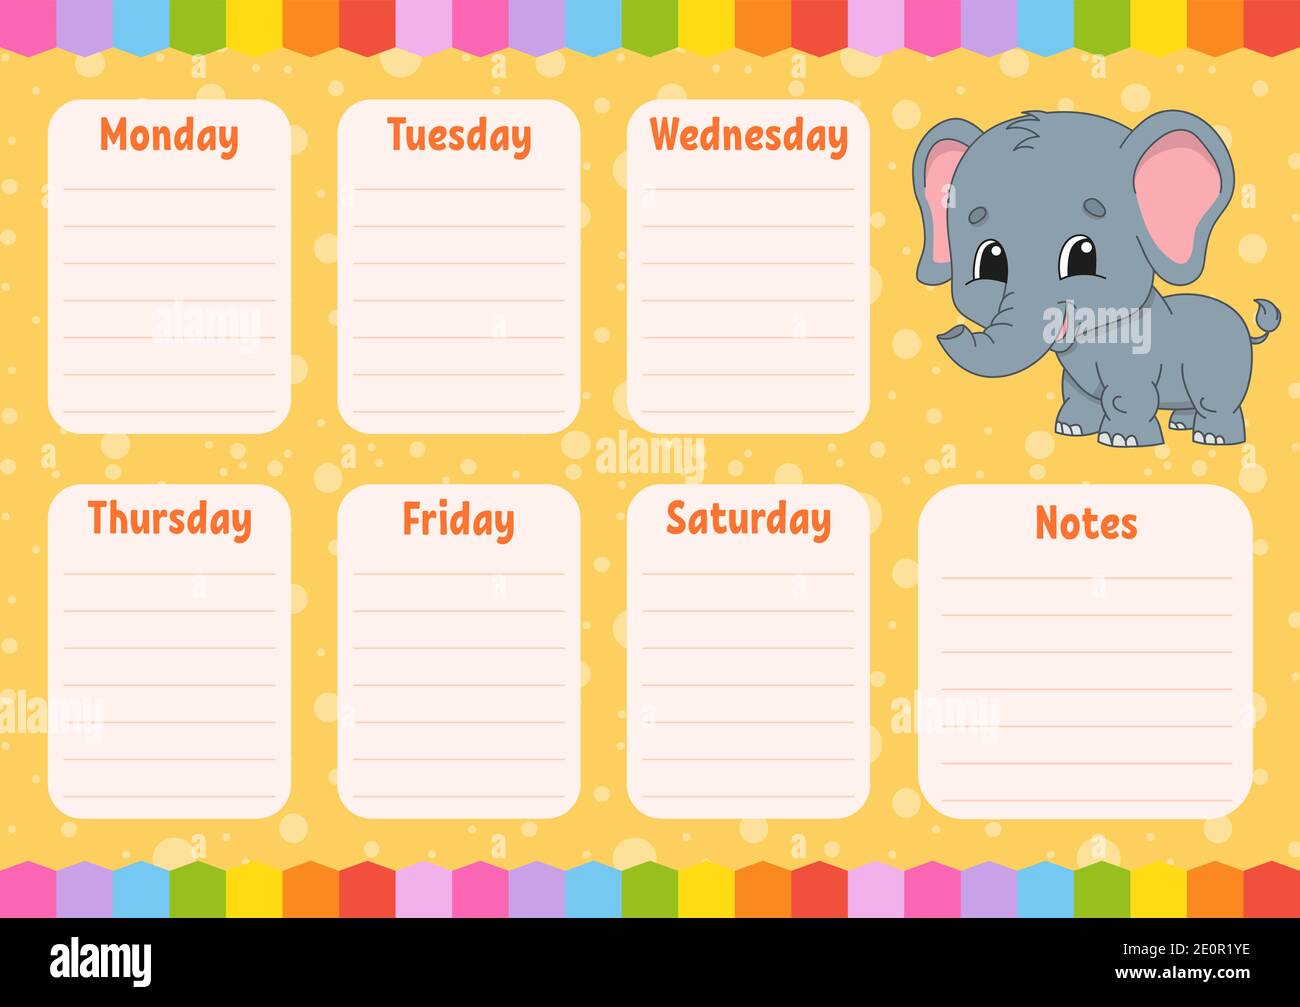 Calendario settimanale per bambini